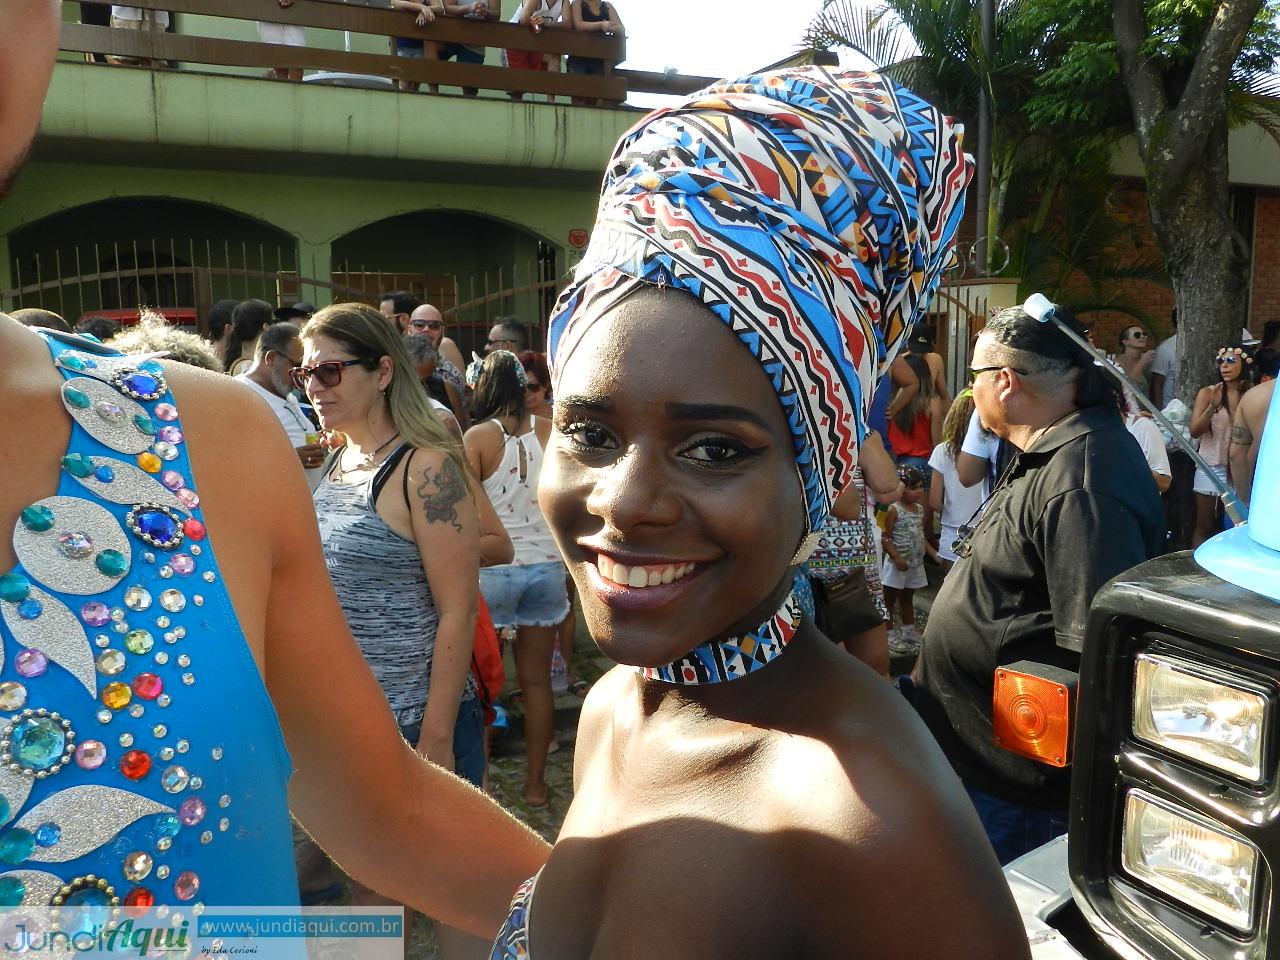  Carnaval virtual: e o povo ficou em casa pra folia Kekerê